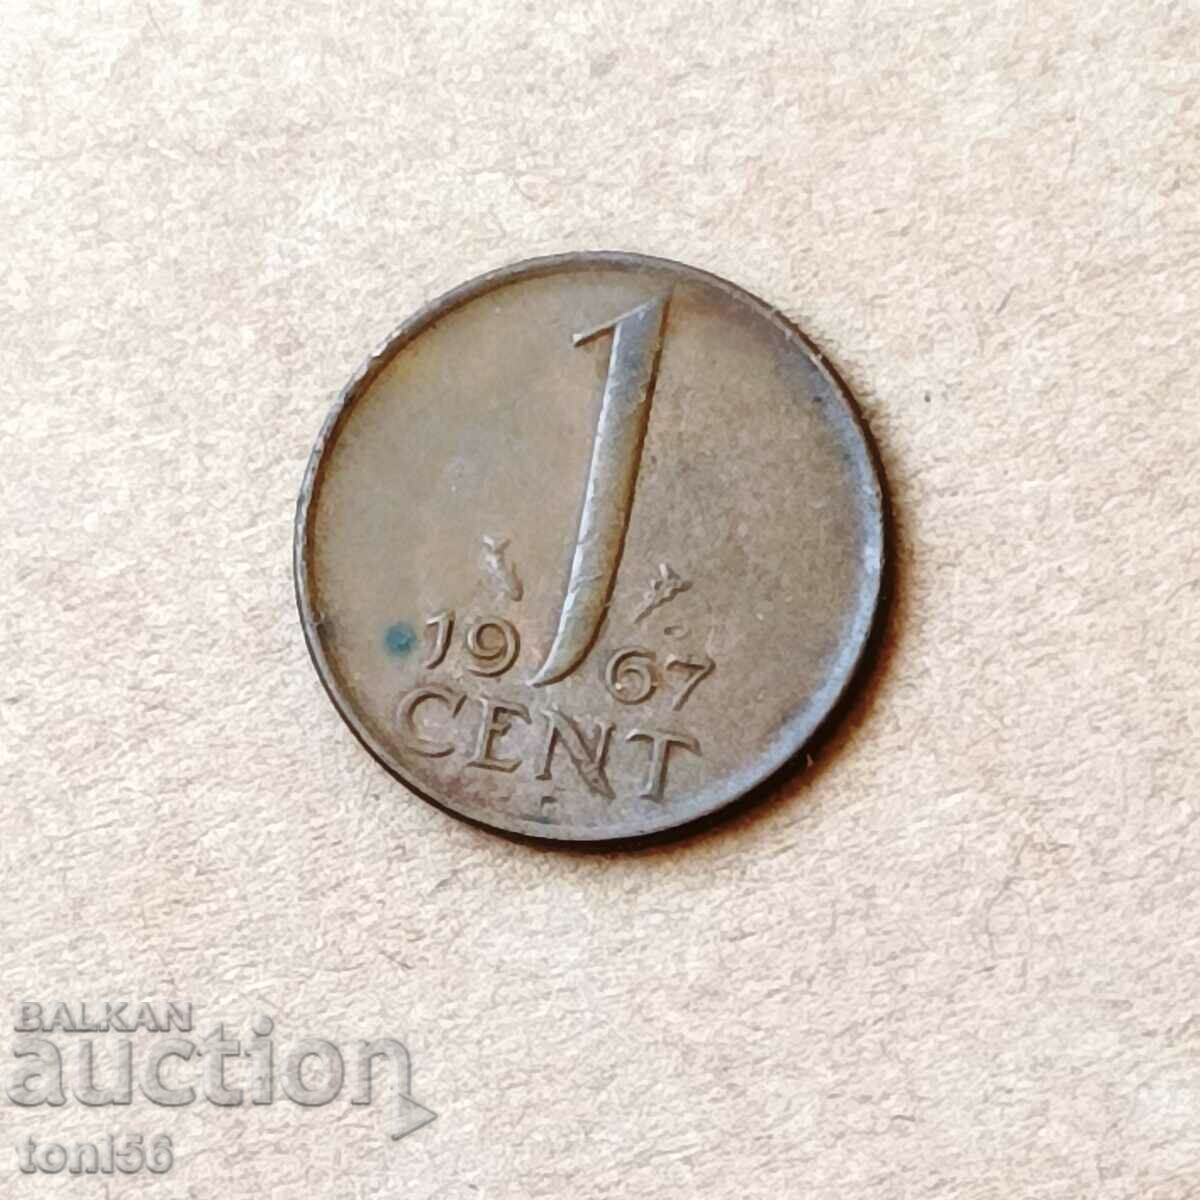 Olanda 1 cent 1967